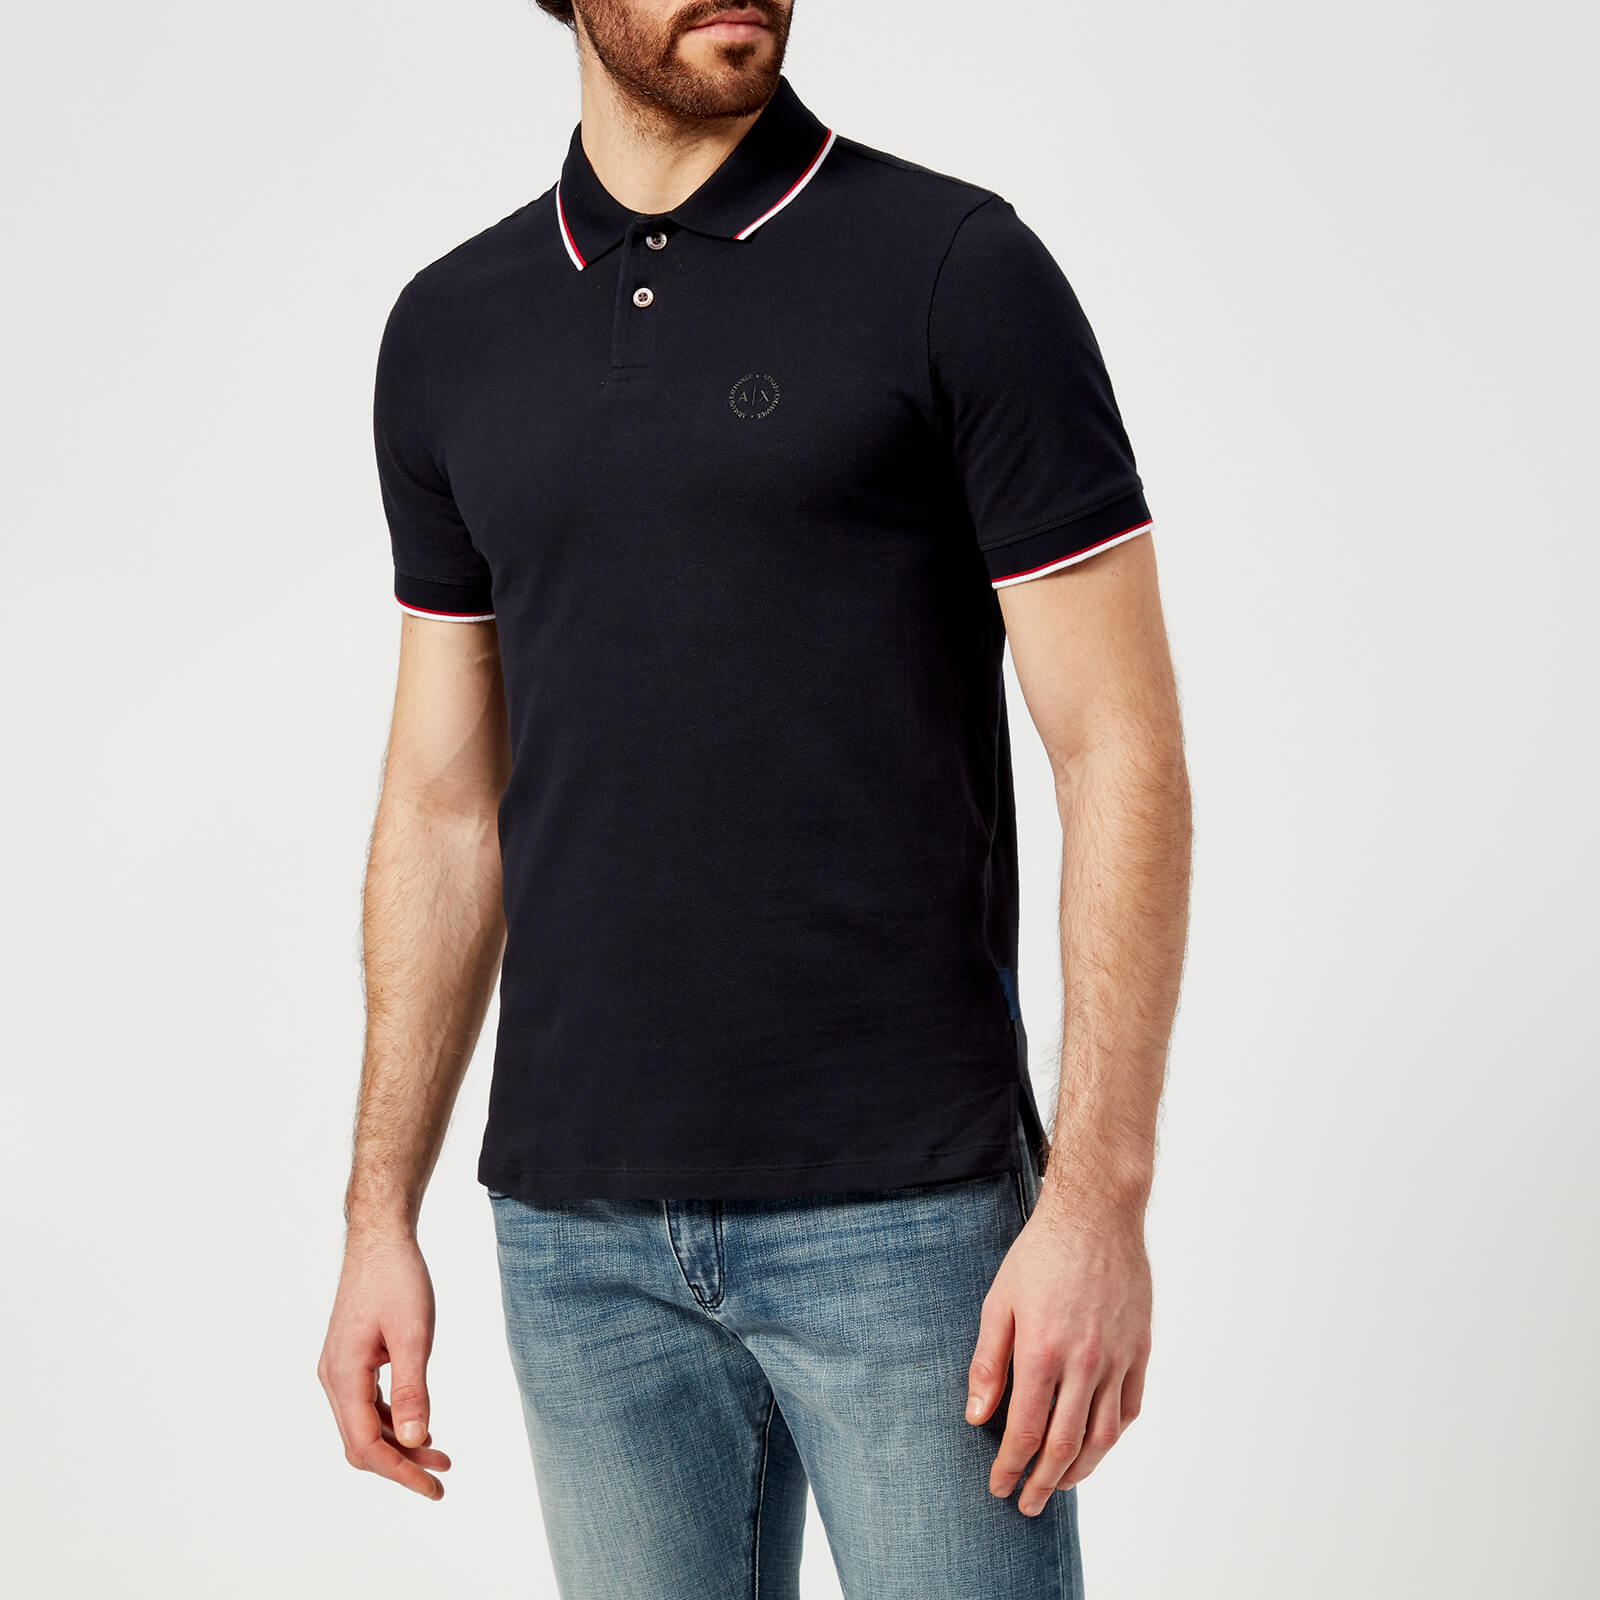 Armani Exchange Men's Tipped Polo Shirt - Navy - L